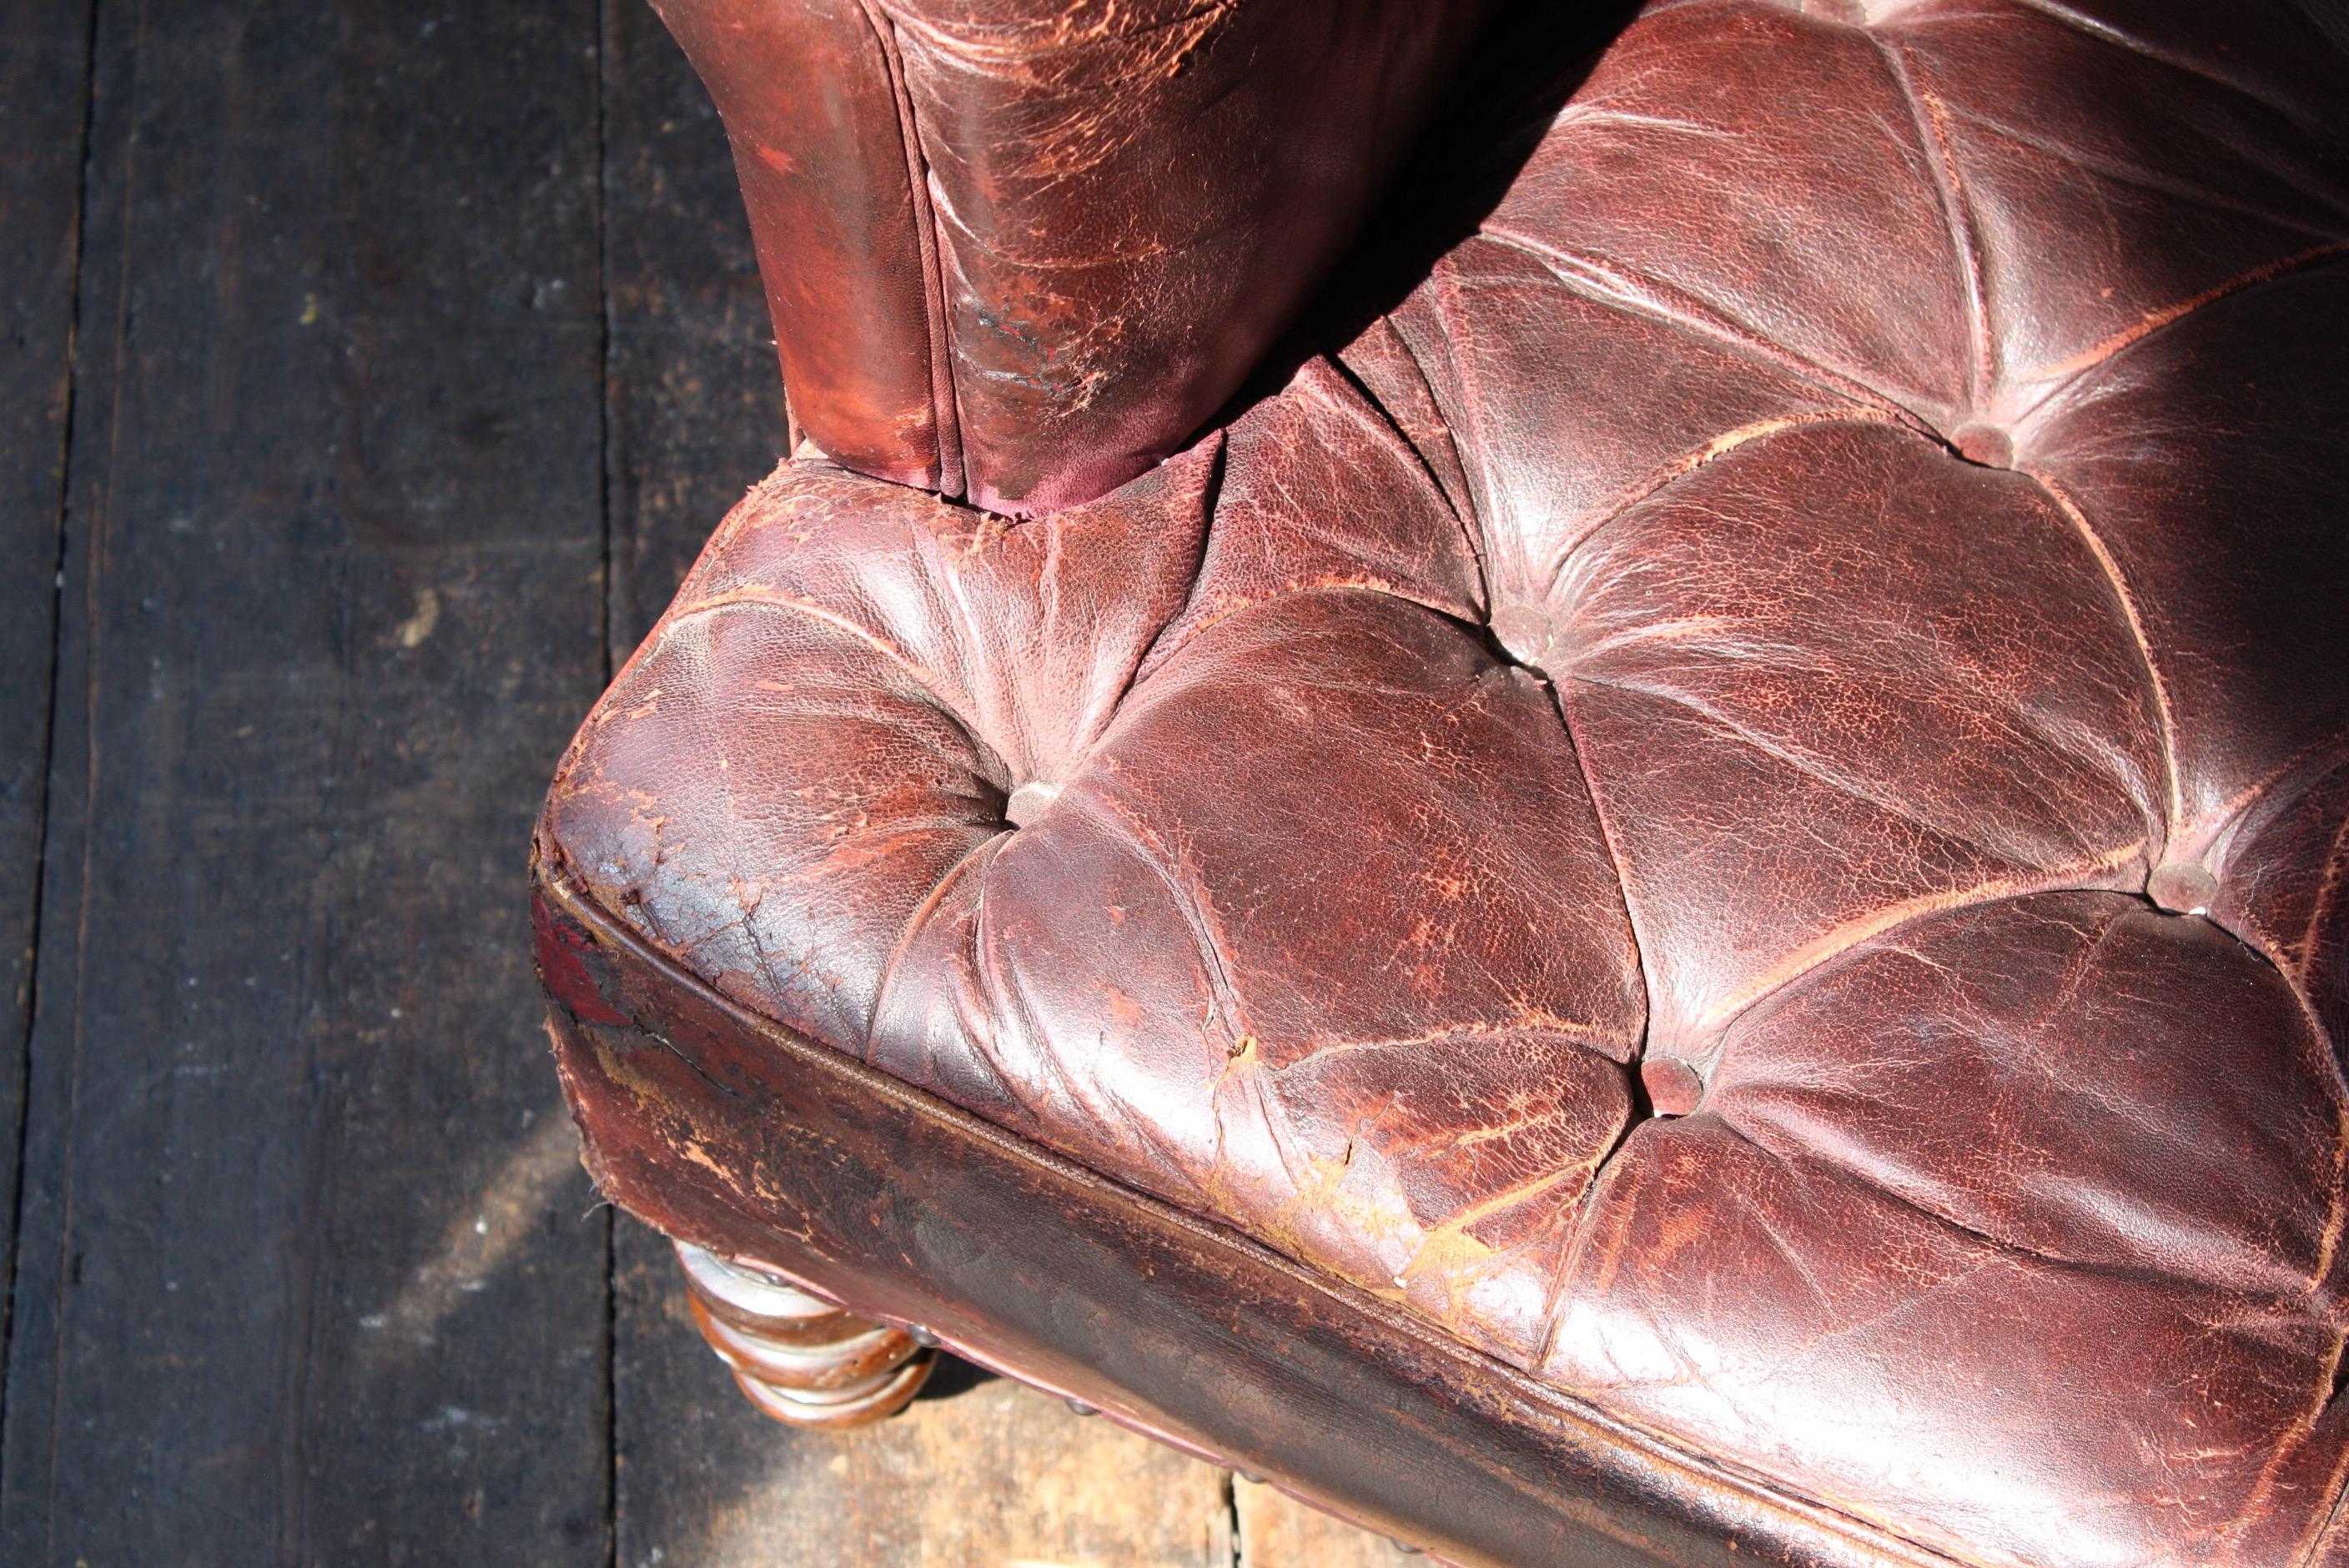 Un beau fauteuil original de la fin du 19e siècle en cuir marron boutonné.

Les pieds avant sont tournés et le dossier est typiquement carré. Tous les pieds sont munis de leurs roulettes en laiton d'origine. 

Les zones d'usure sont celles que l'on